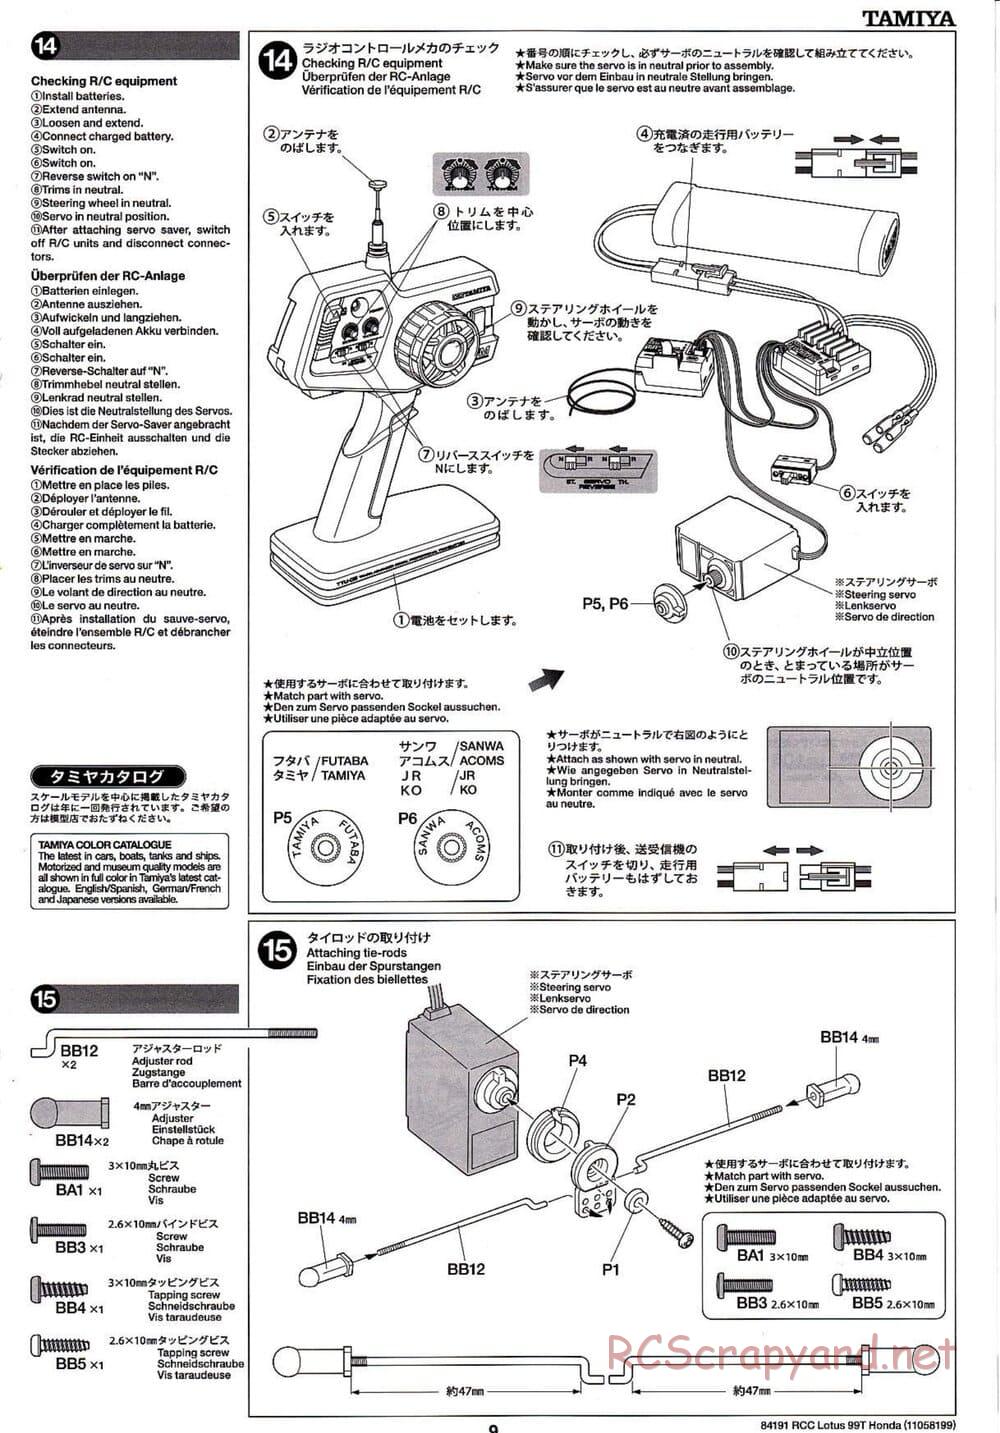 Tamiya - Team Lotus 99T Honda - F103 Chassis - Manual - Page 9